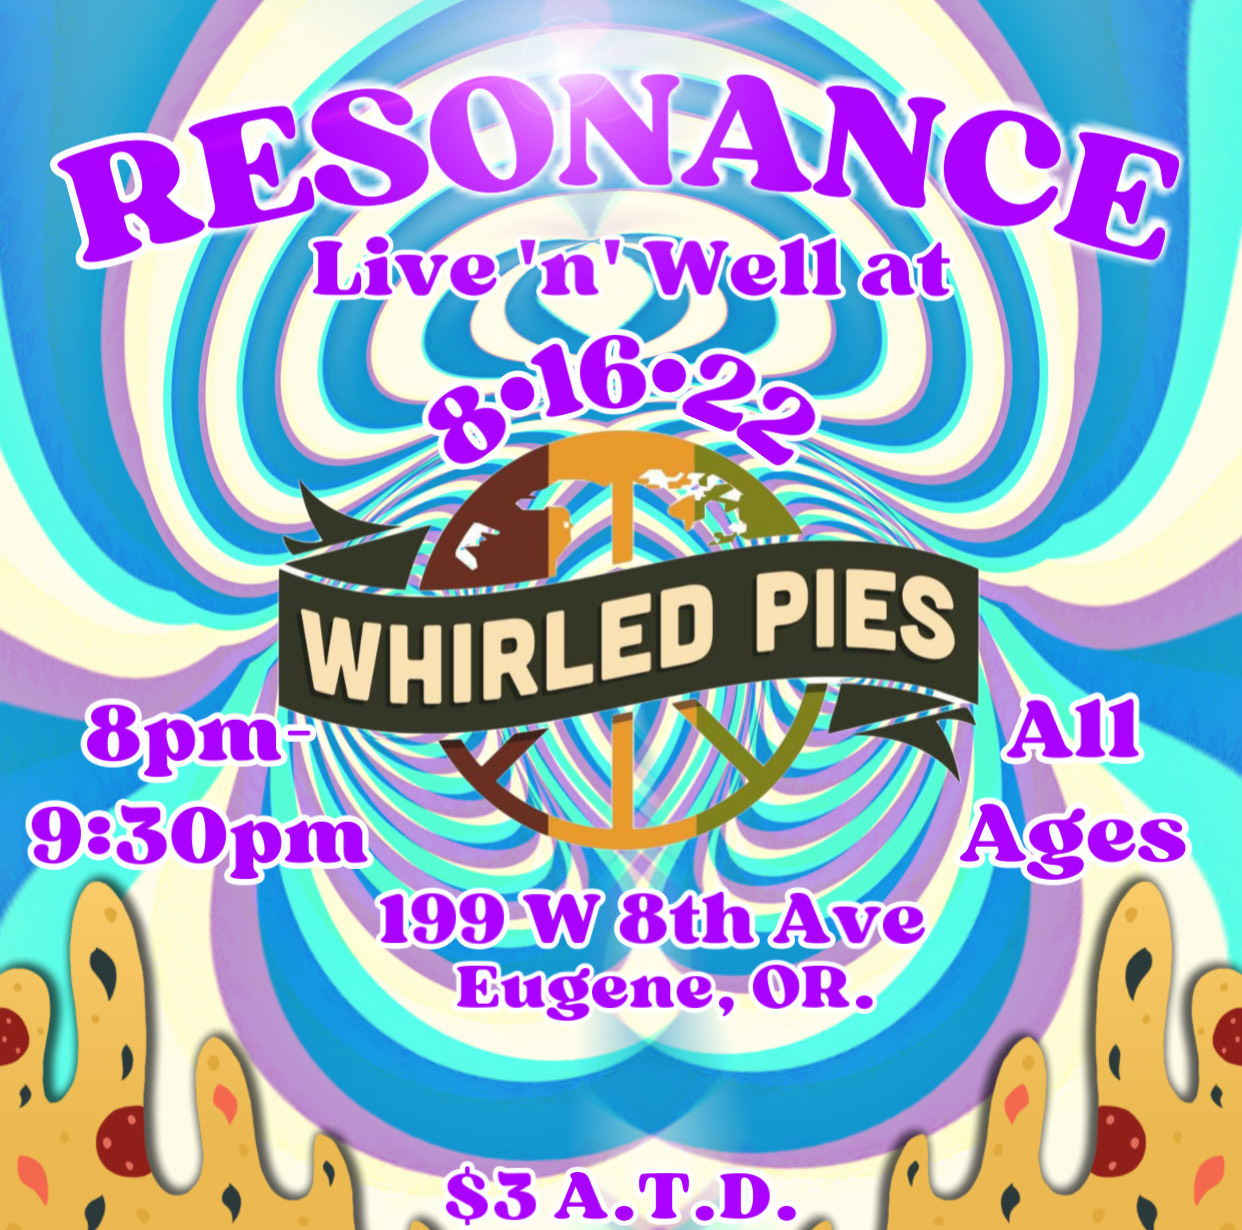 Resonance Band at whirled pies 8 16